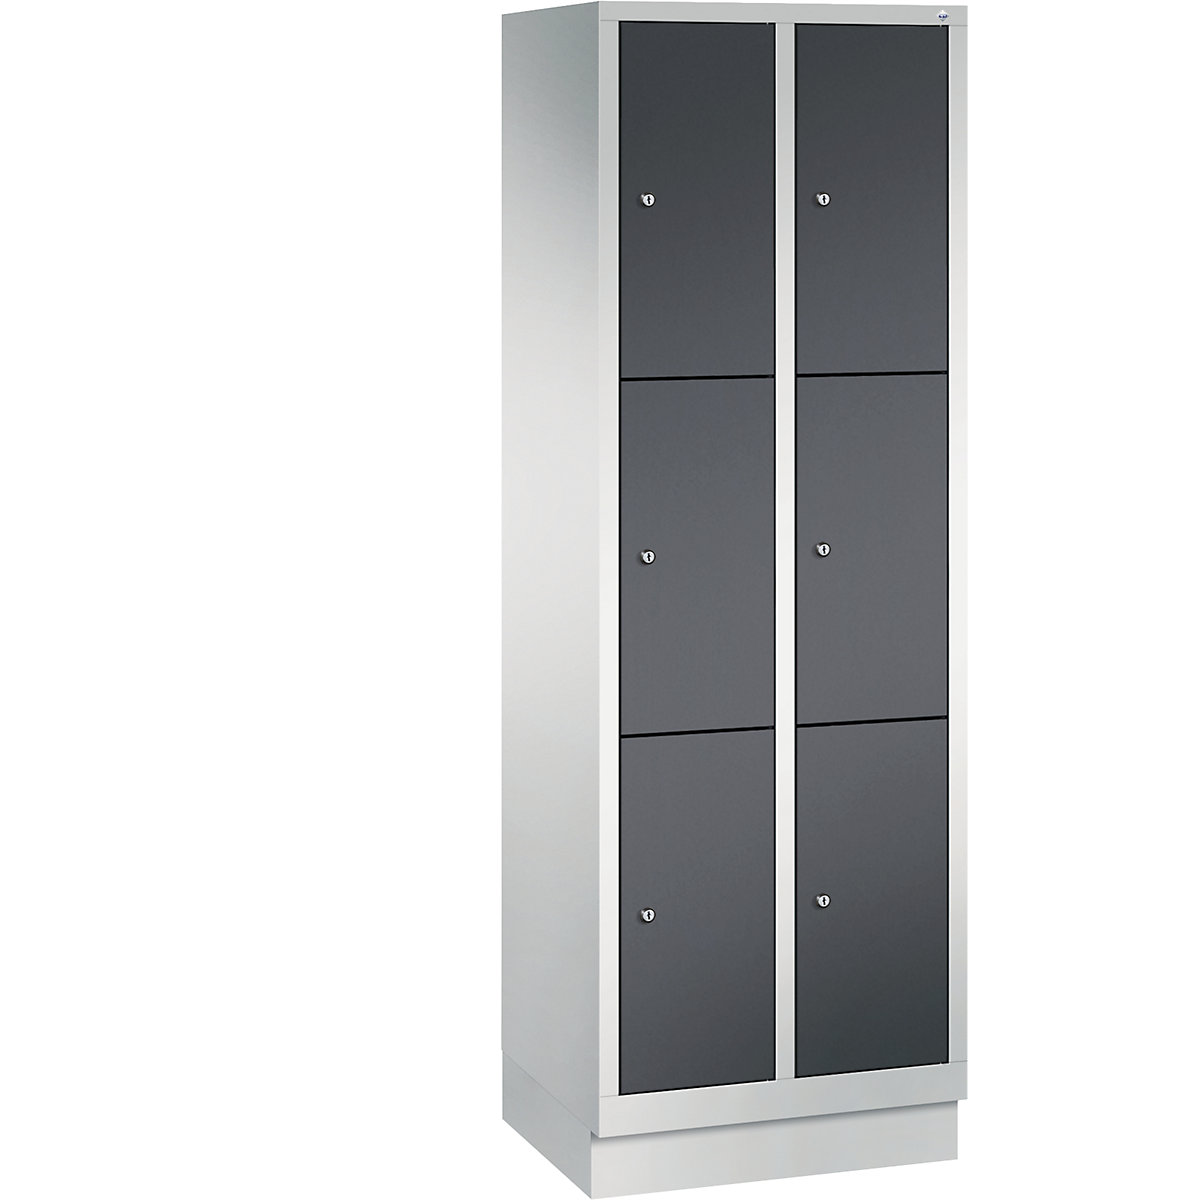 CLASSIC locker unit with plinth – C+P, 2 compartments, 3 shelf compartments each, compartment width 300 mm, light grey / black grey-4